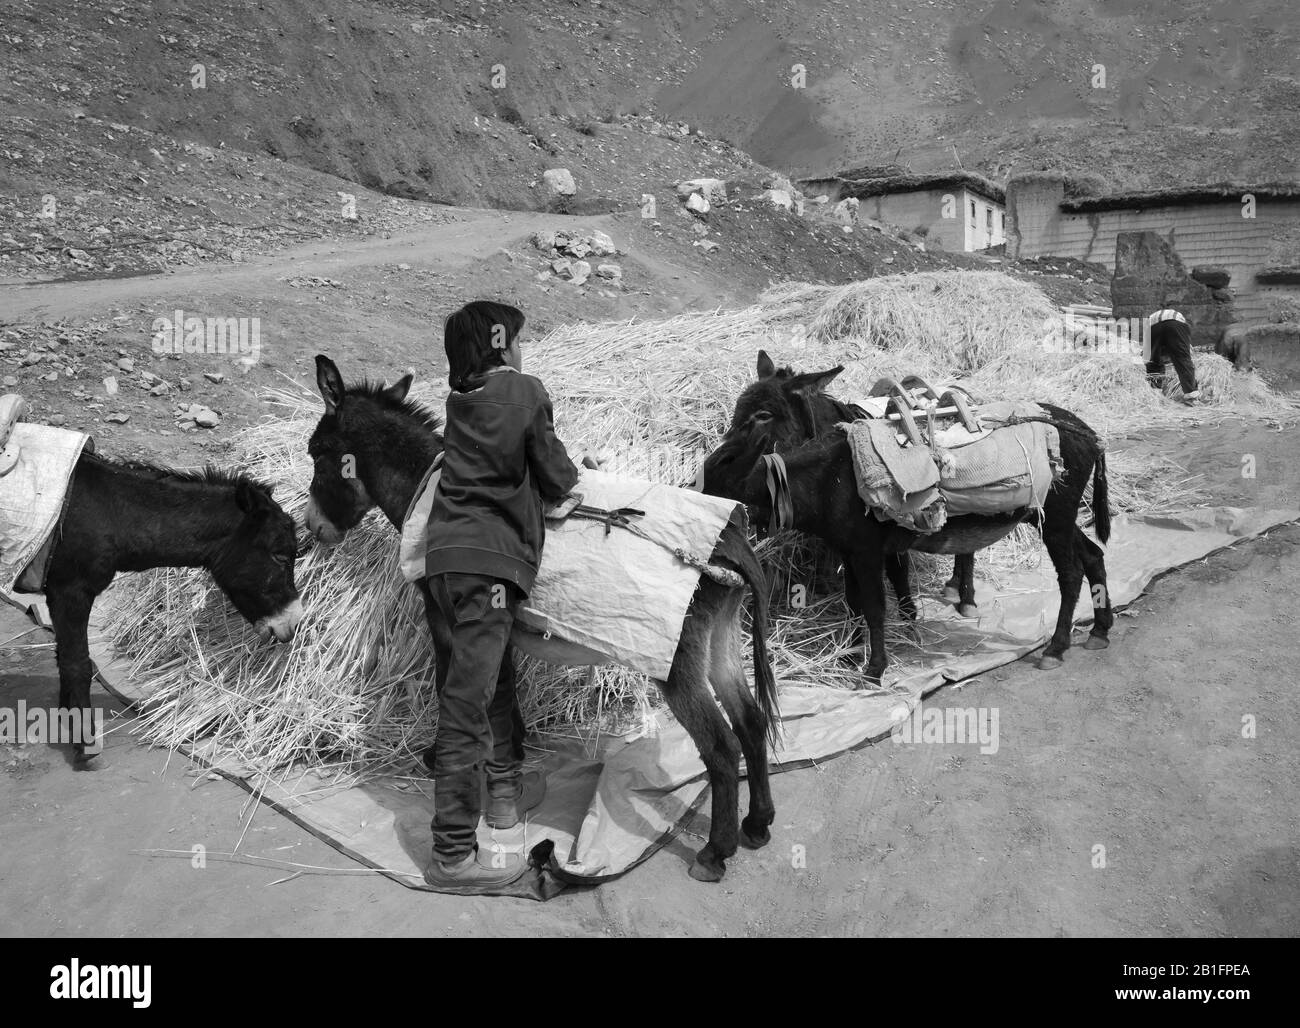 El joven agricultor se prepara para cargar burros con paja de trigo almacenada como apilados al aire libre en el Himalaya en Chicham, Himachal Pradesh, India. Foto de stock